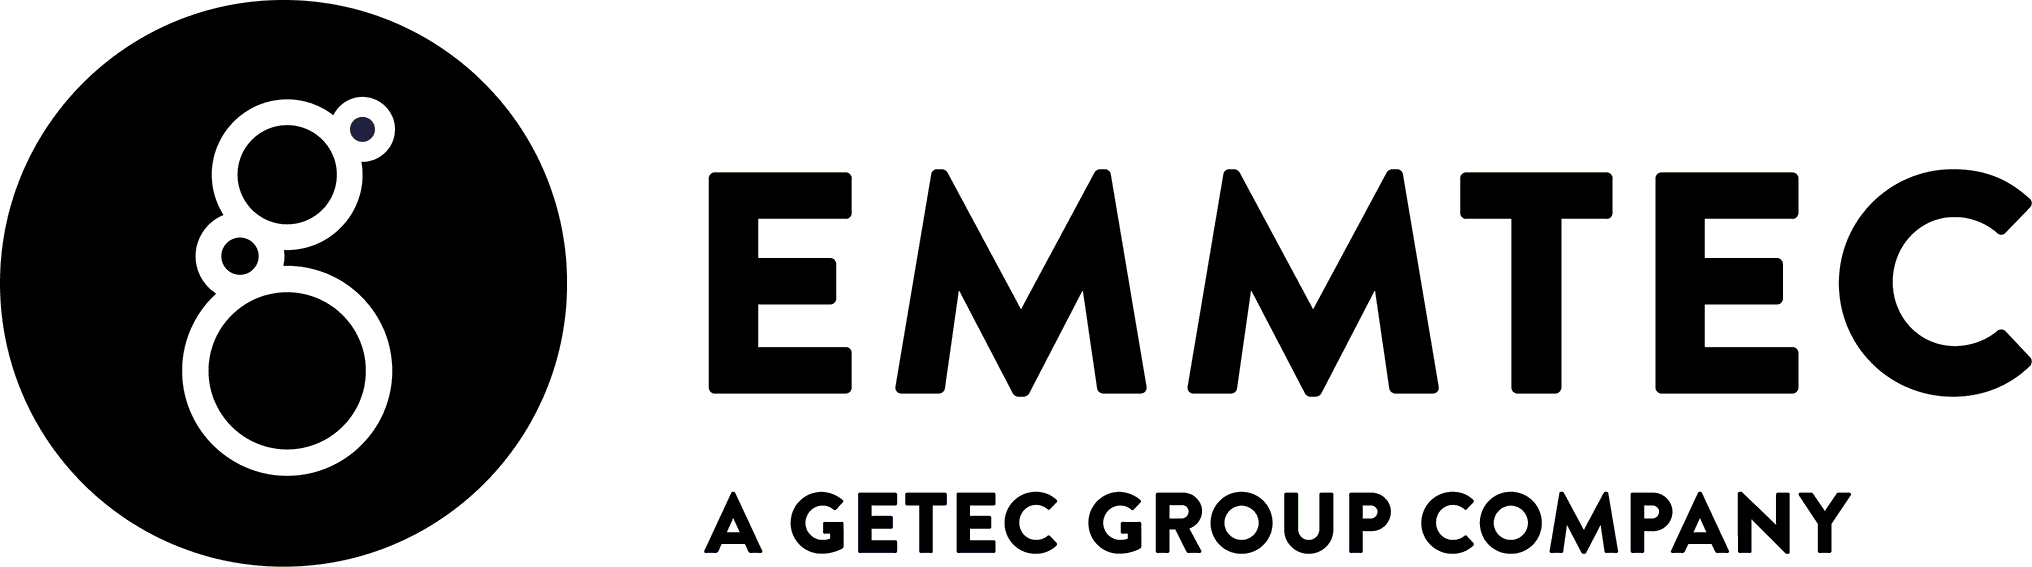 EMMTEC services - logo